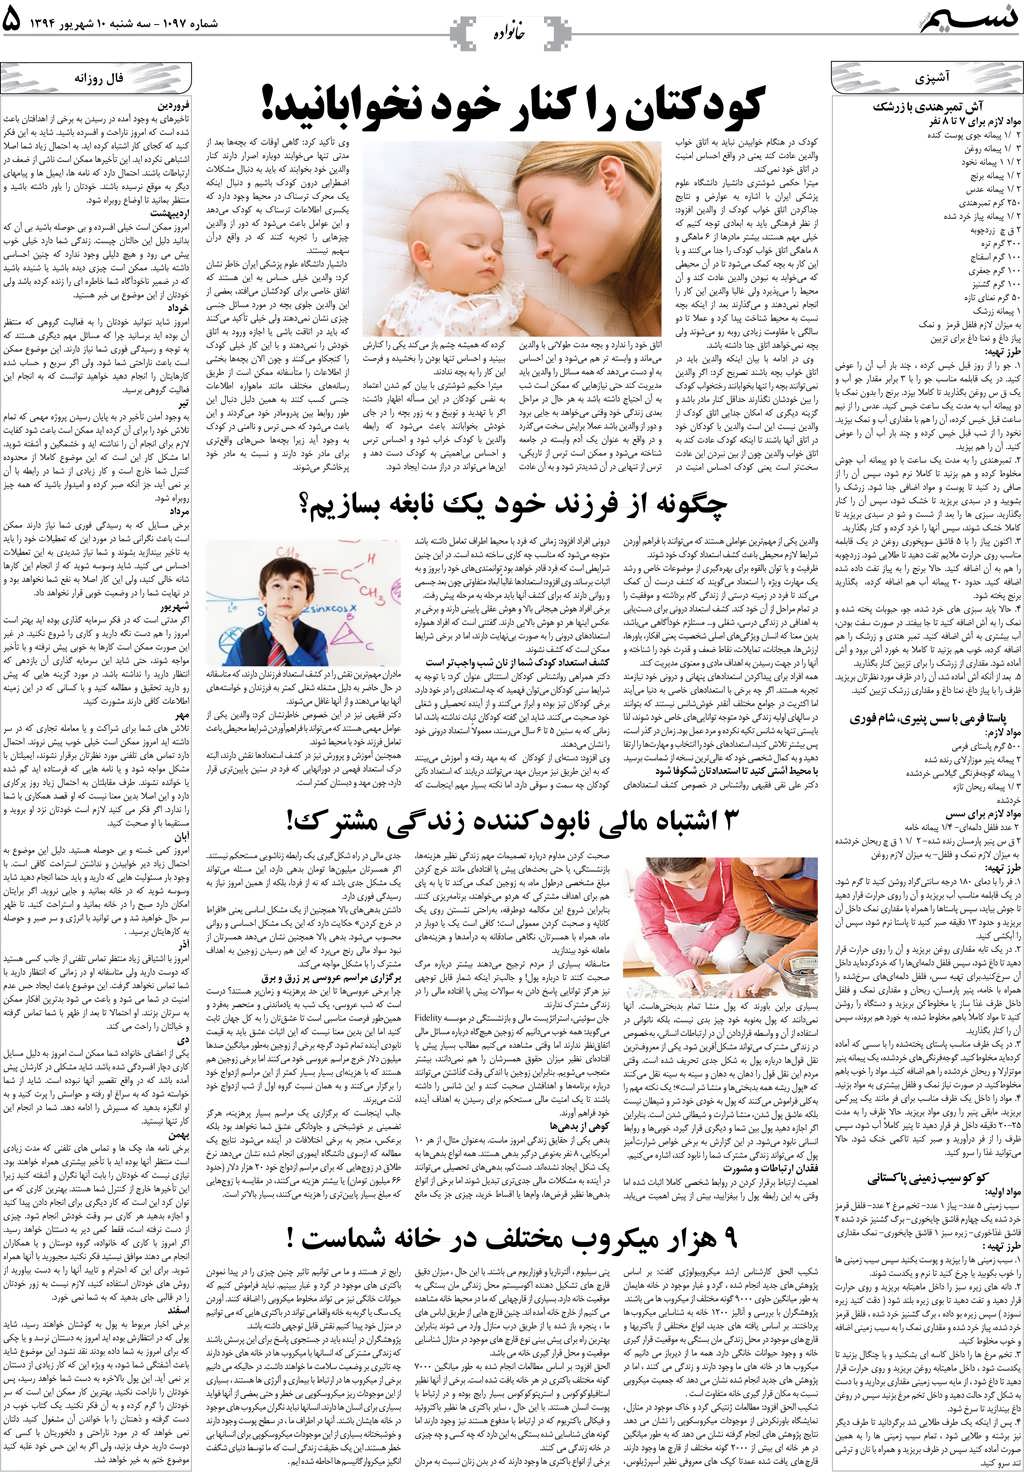 صفحه خانواده روزنامه نسیم شماره 1097